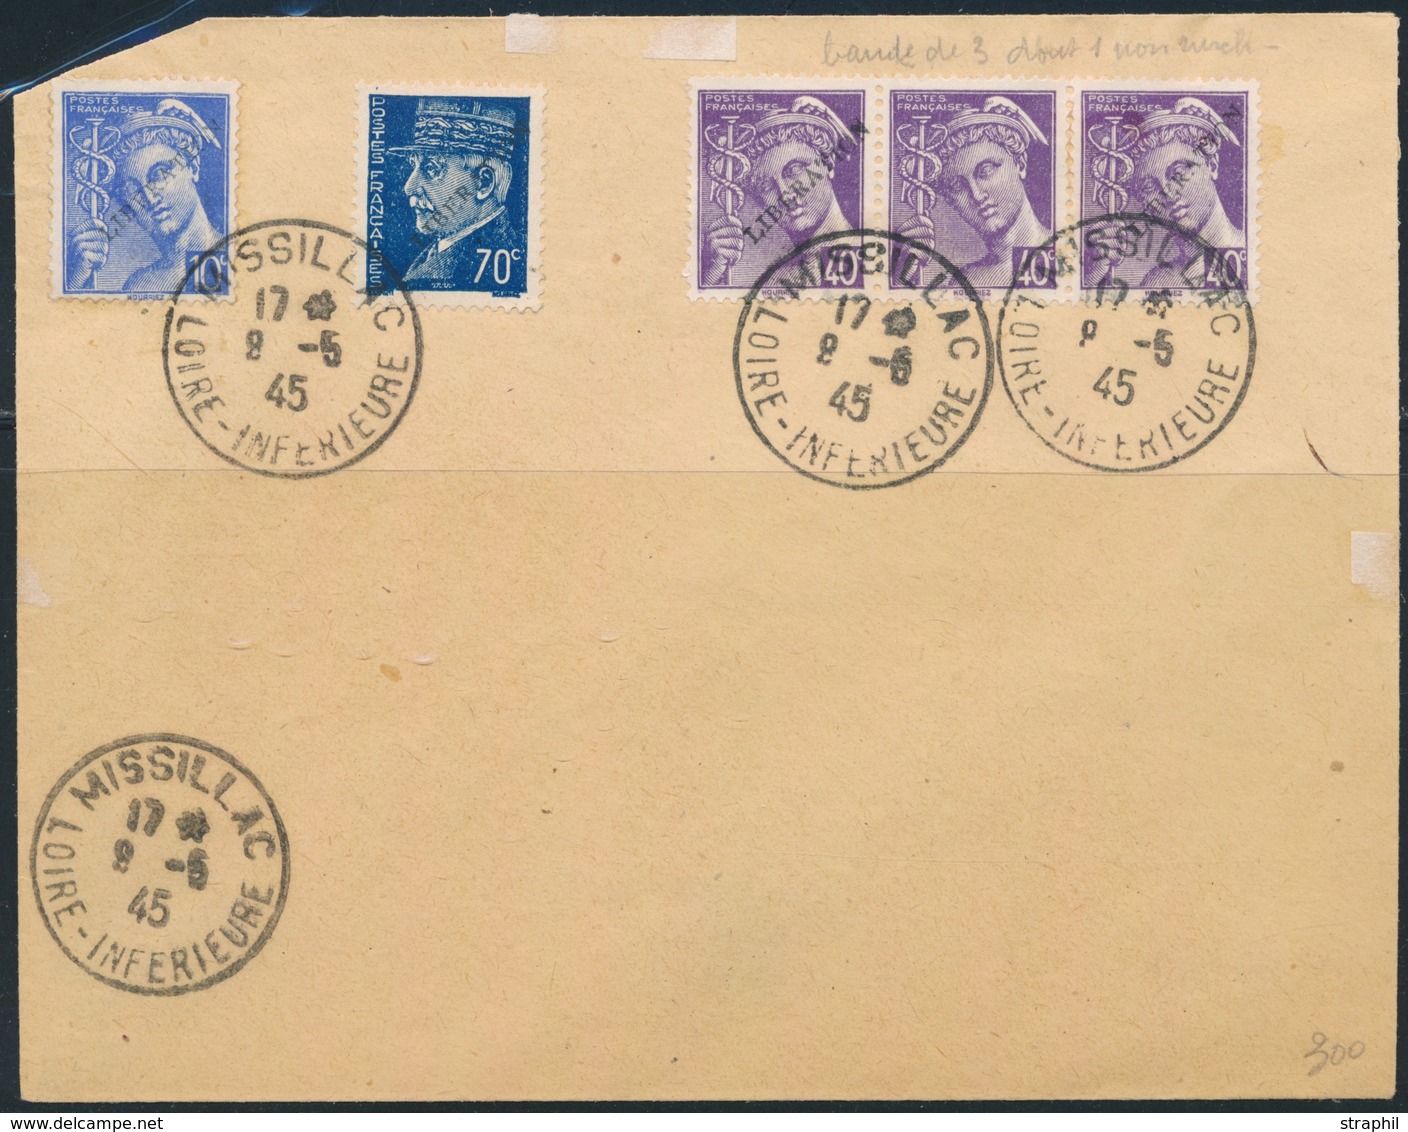 L POCHE DE SAINT NAZAIRE - L - Pli Afft à 2F (Pétain + Mercure) - Obl. Missillac - 9/5/45 - TB - War Stamps